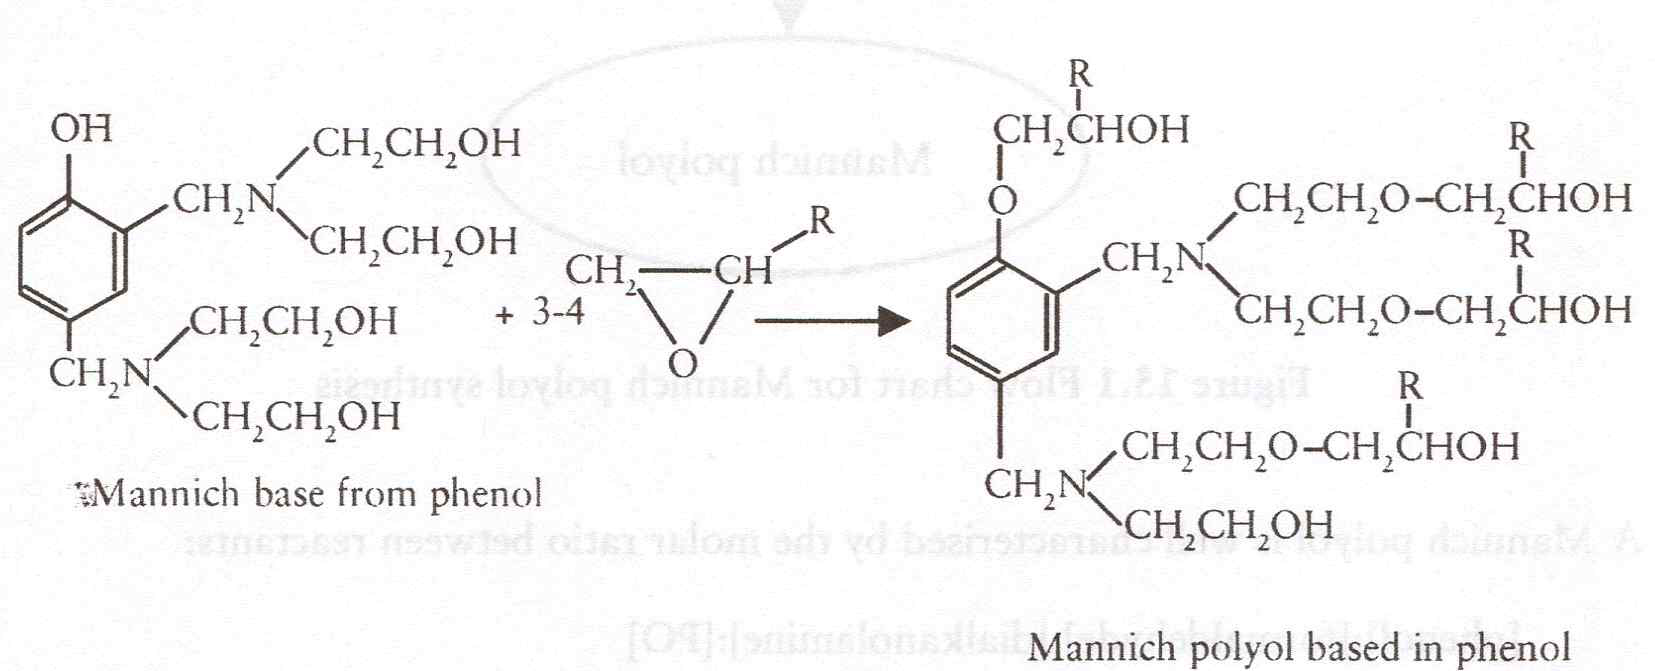 페놀계 Mannich base의 propylene oxide 부가 반응을 통한 Mannich polyol 제조